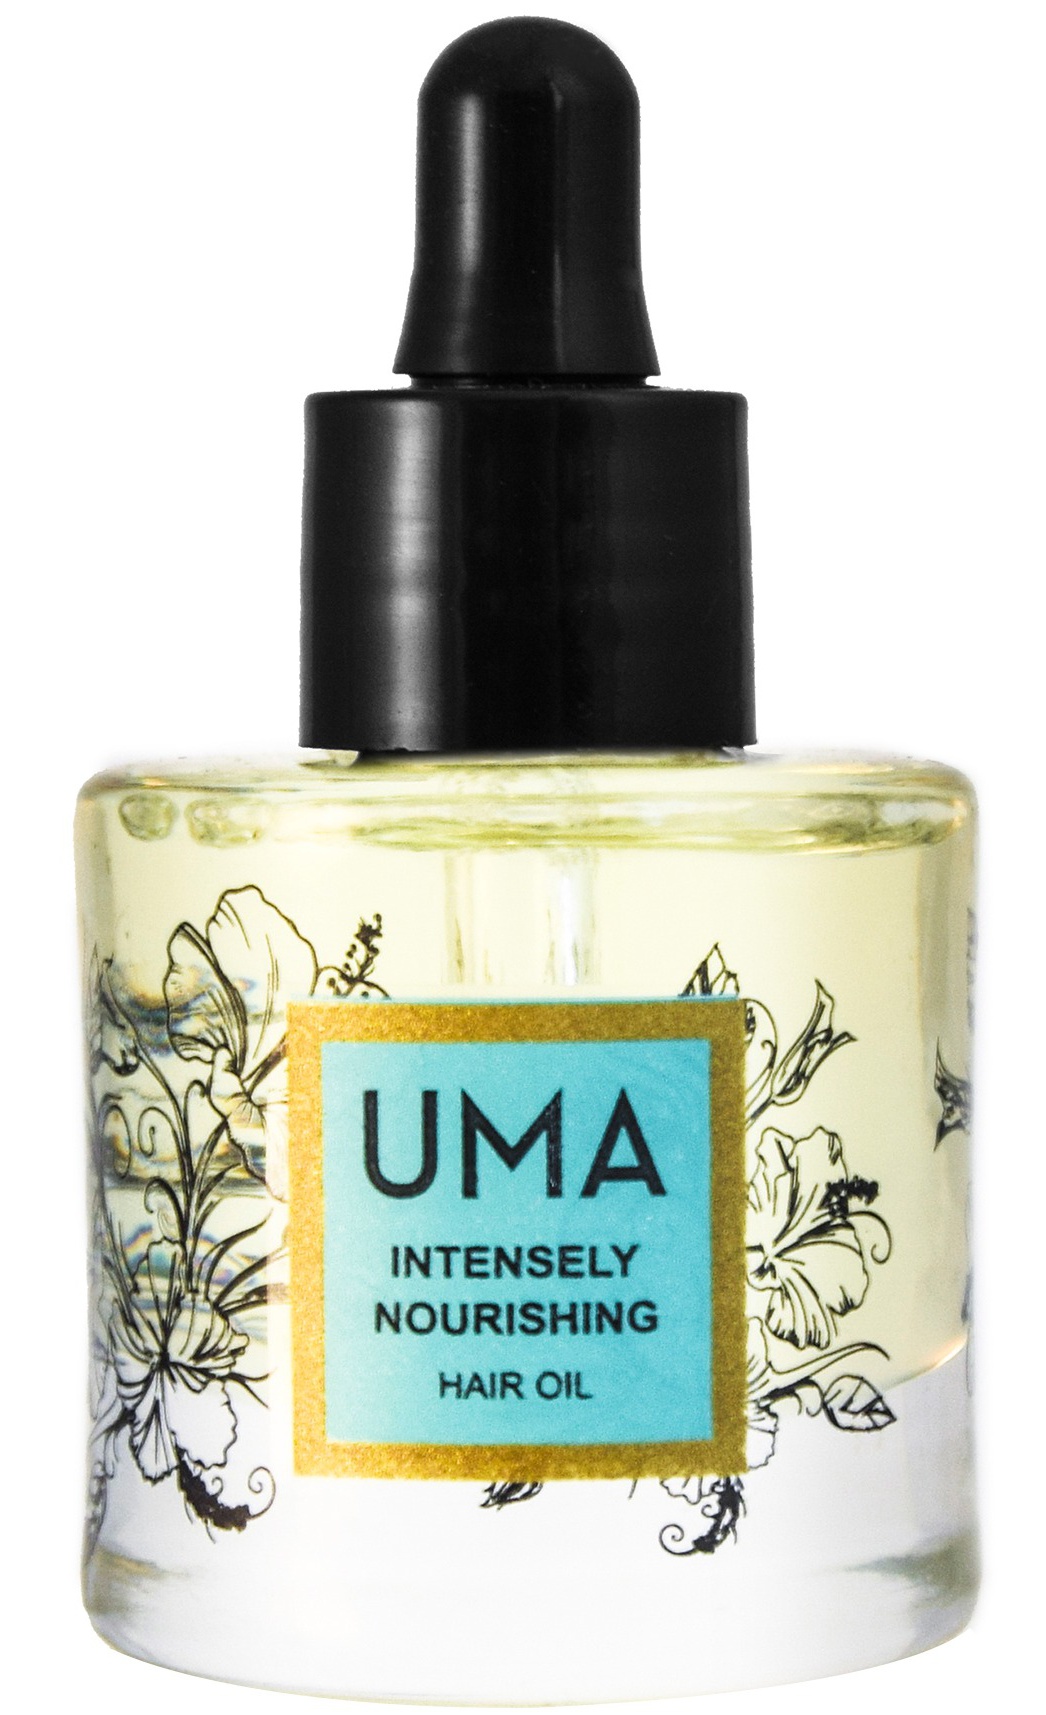 UMA Intensely Nourishing Hair Oil